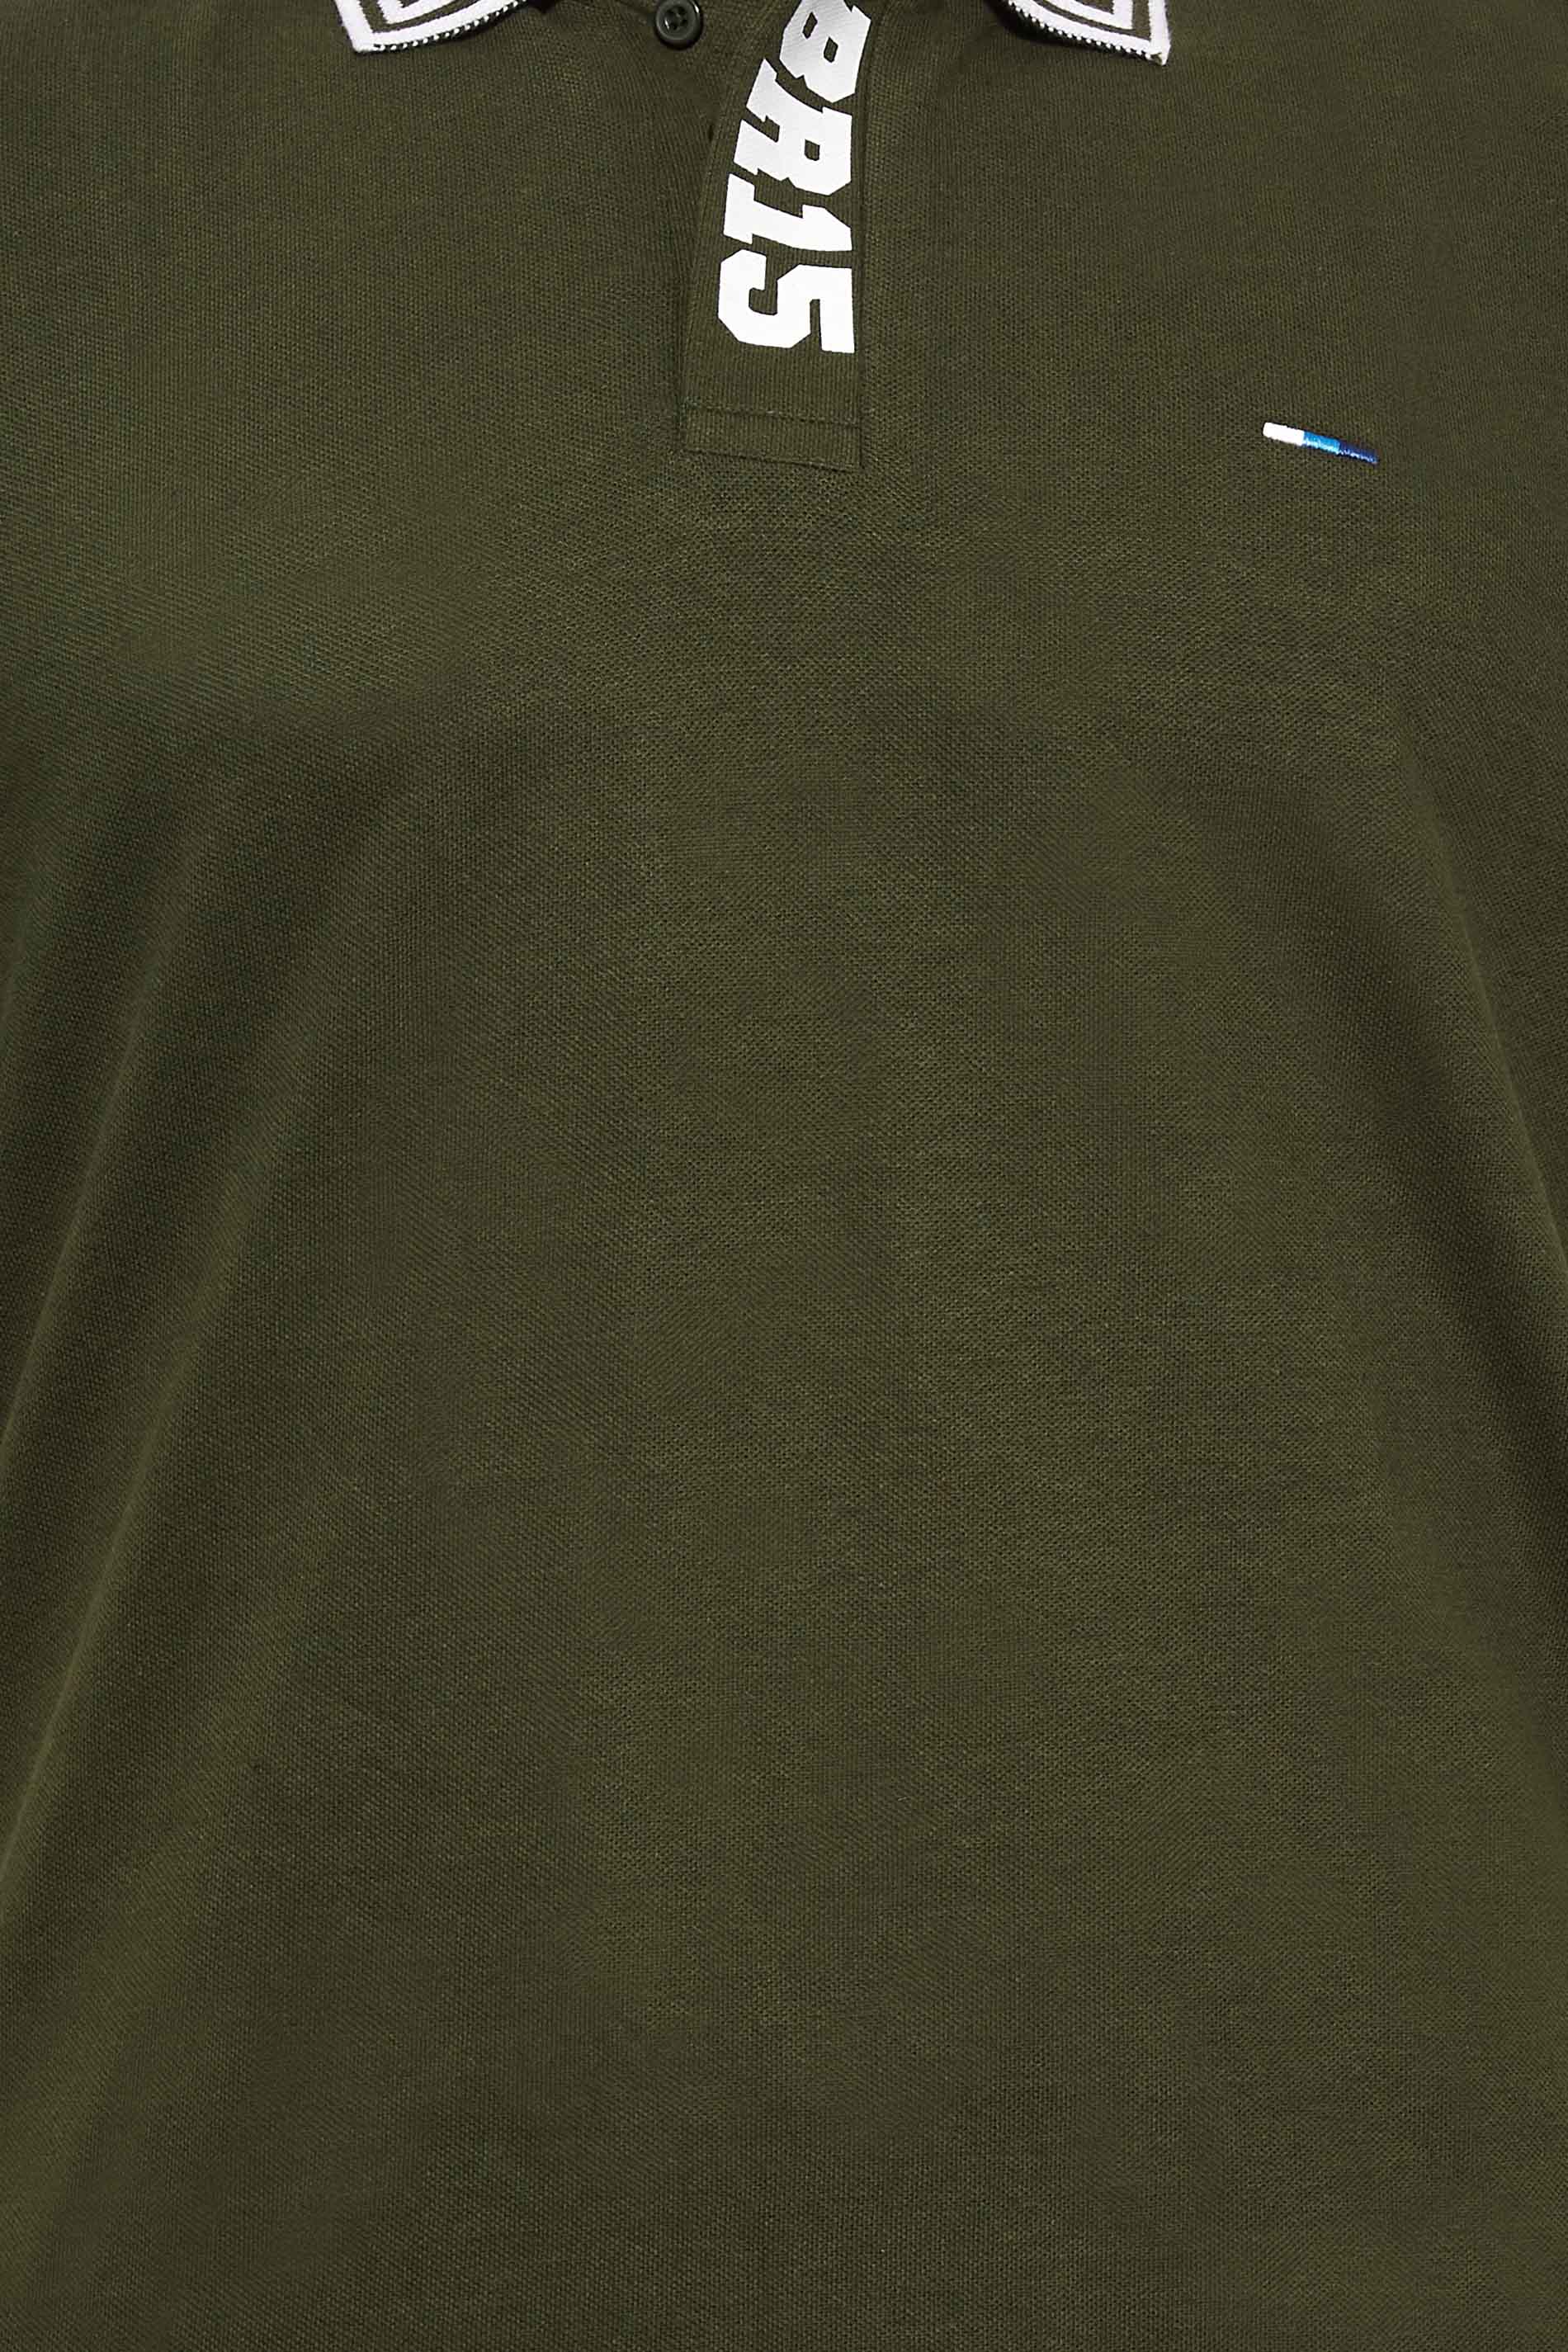 BadRhino Big & Tall Khaki Green BR15 Placket Polo Shirt | BadRhino 2